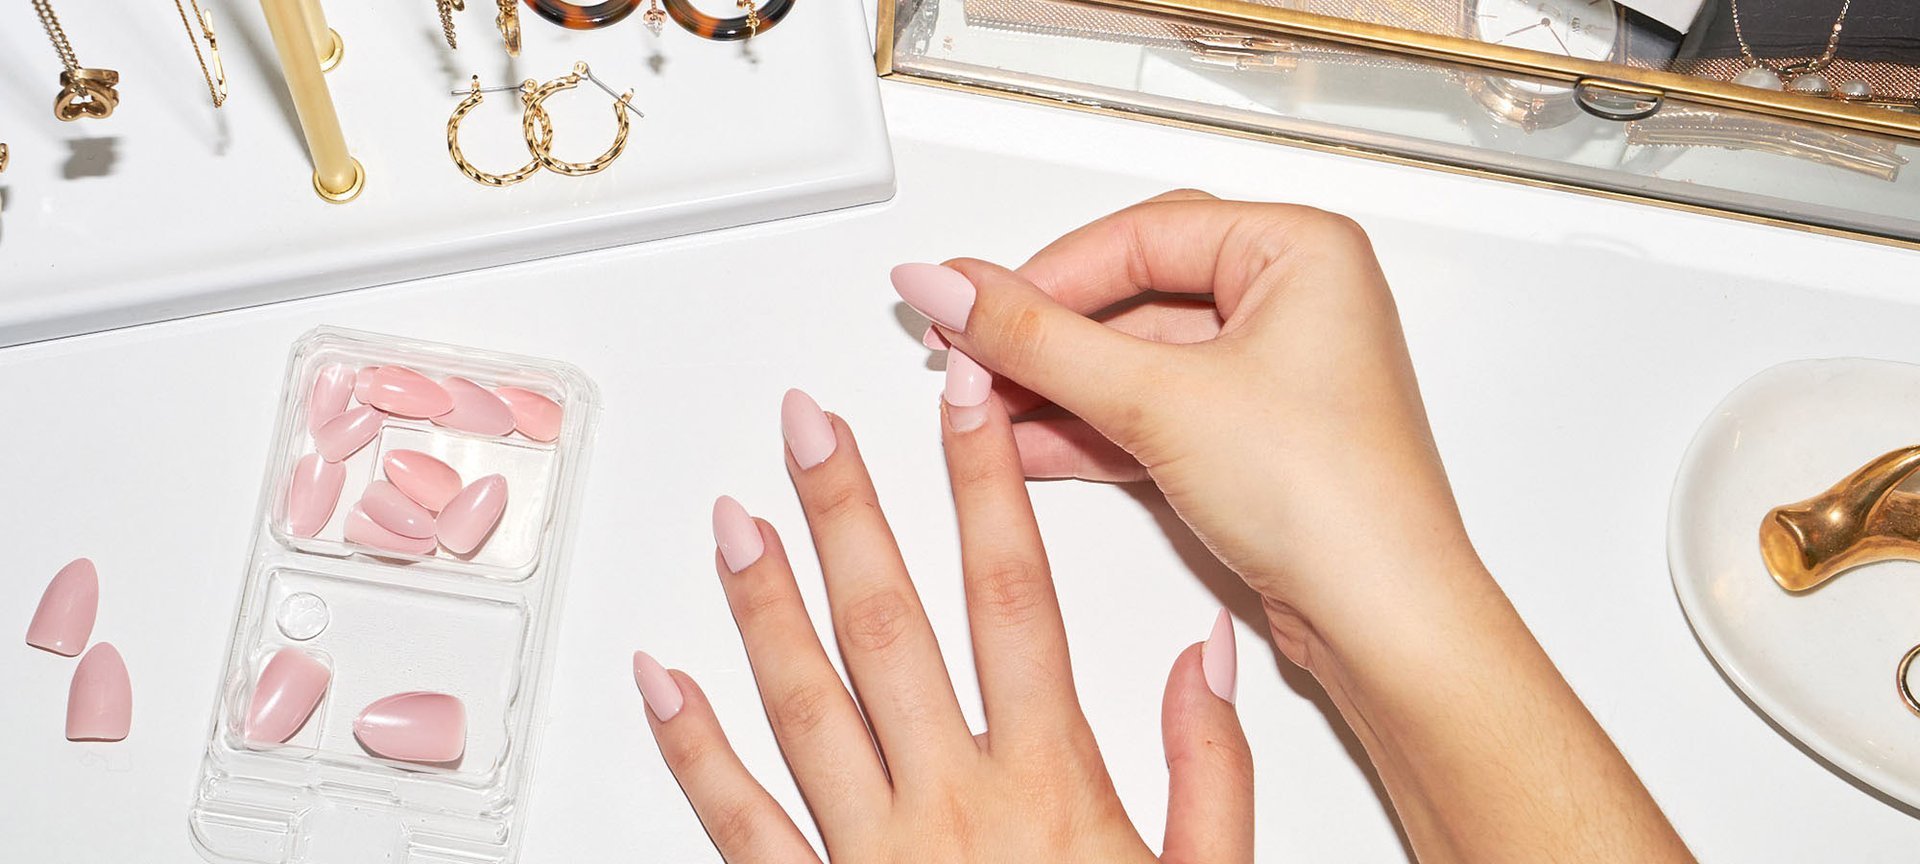 How to Make Press-On Nails Last Longer - L'Oréal Paris